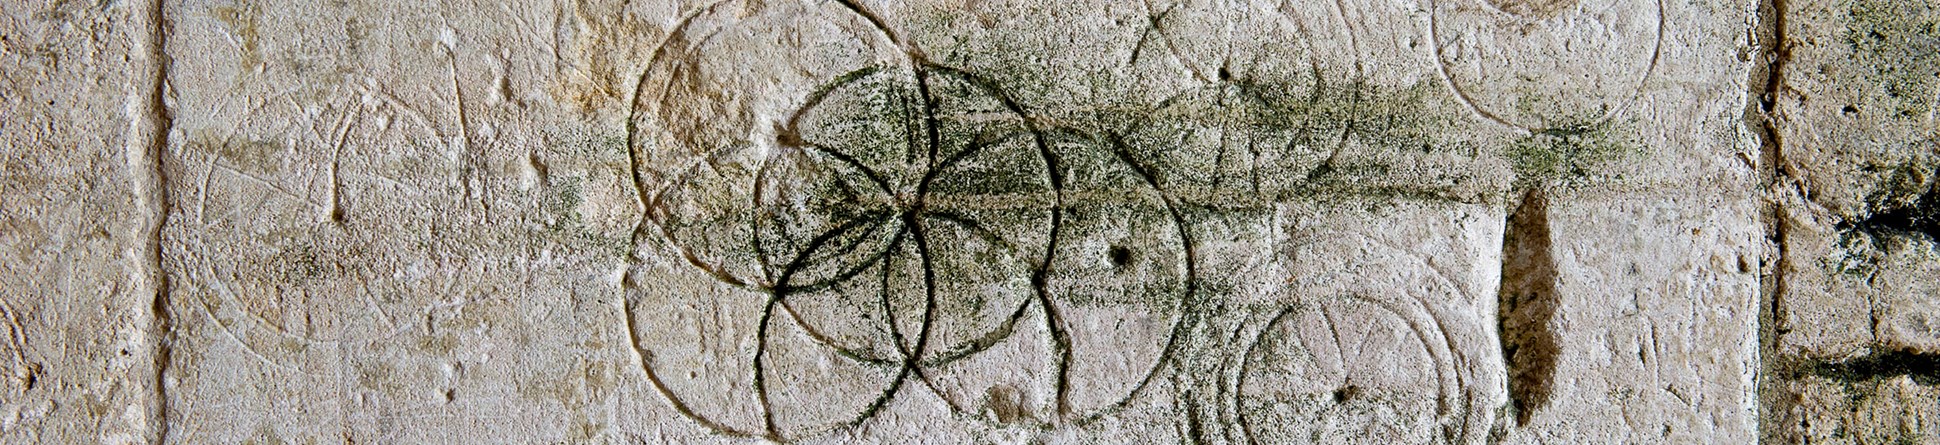 Apotropaic marks found at Bradford-on-Avon tithe barn